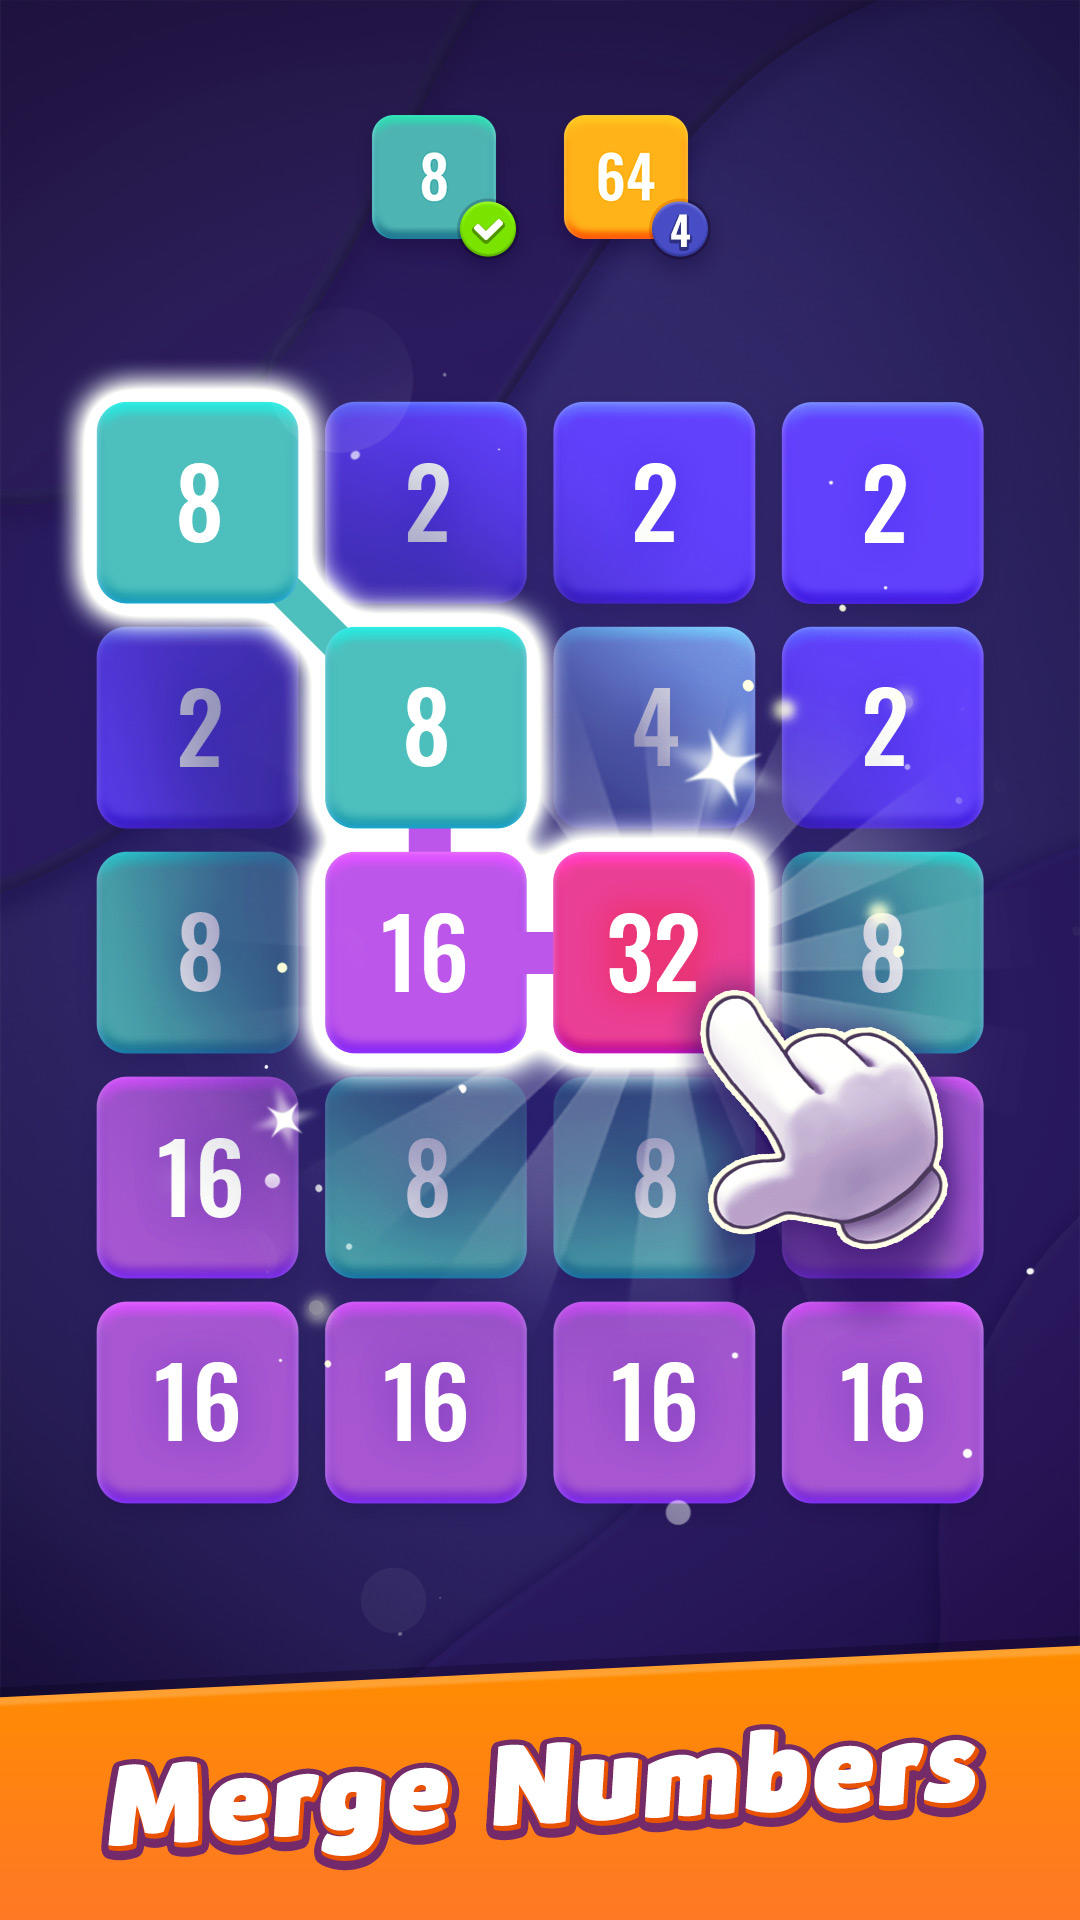 2448: Block Puzzle Number Game screenshot game